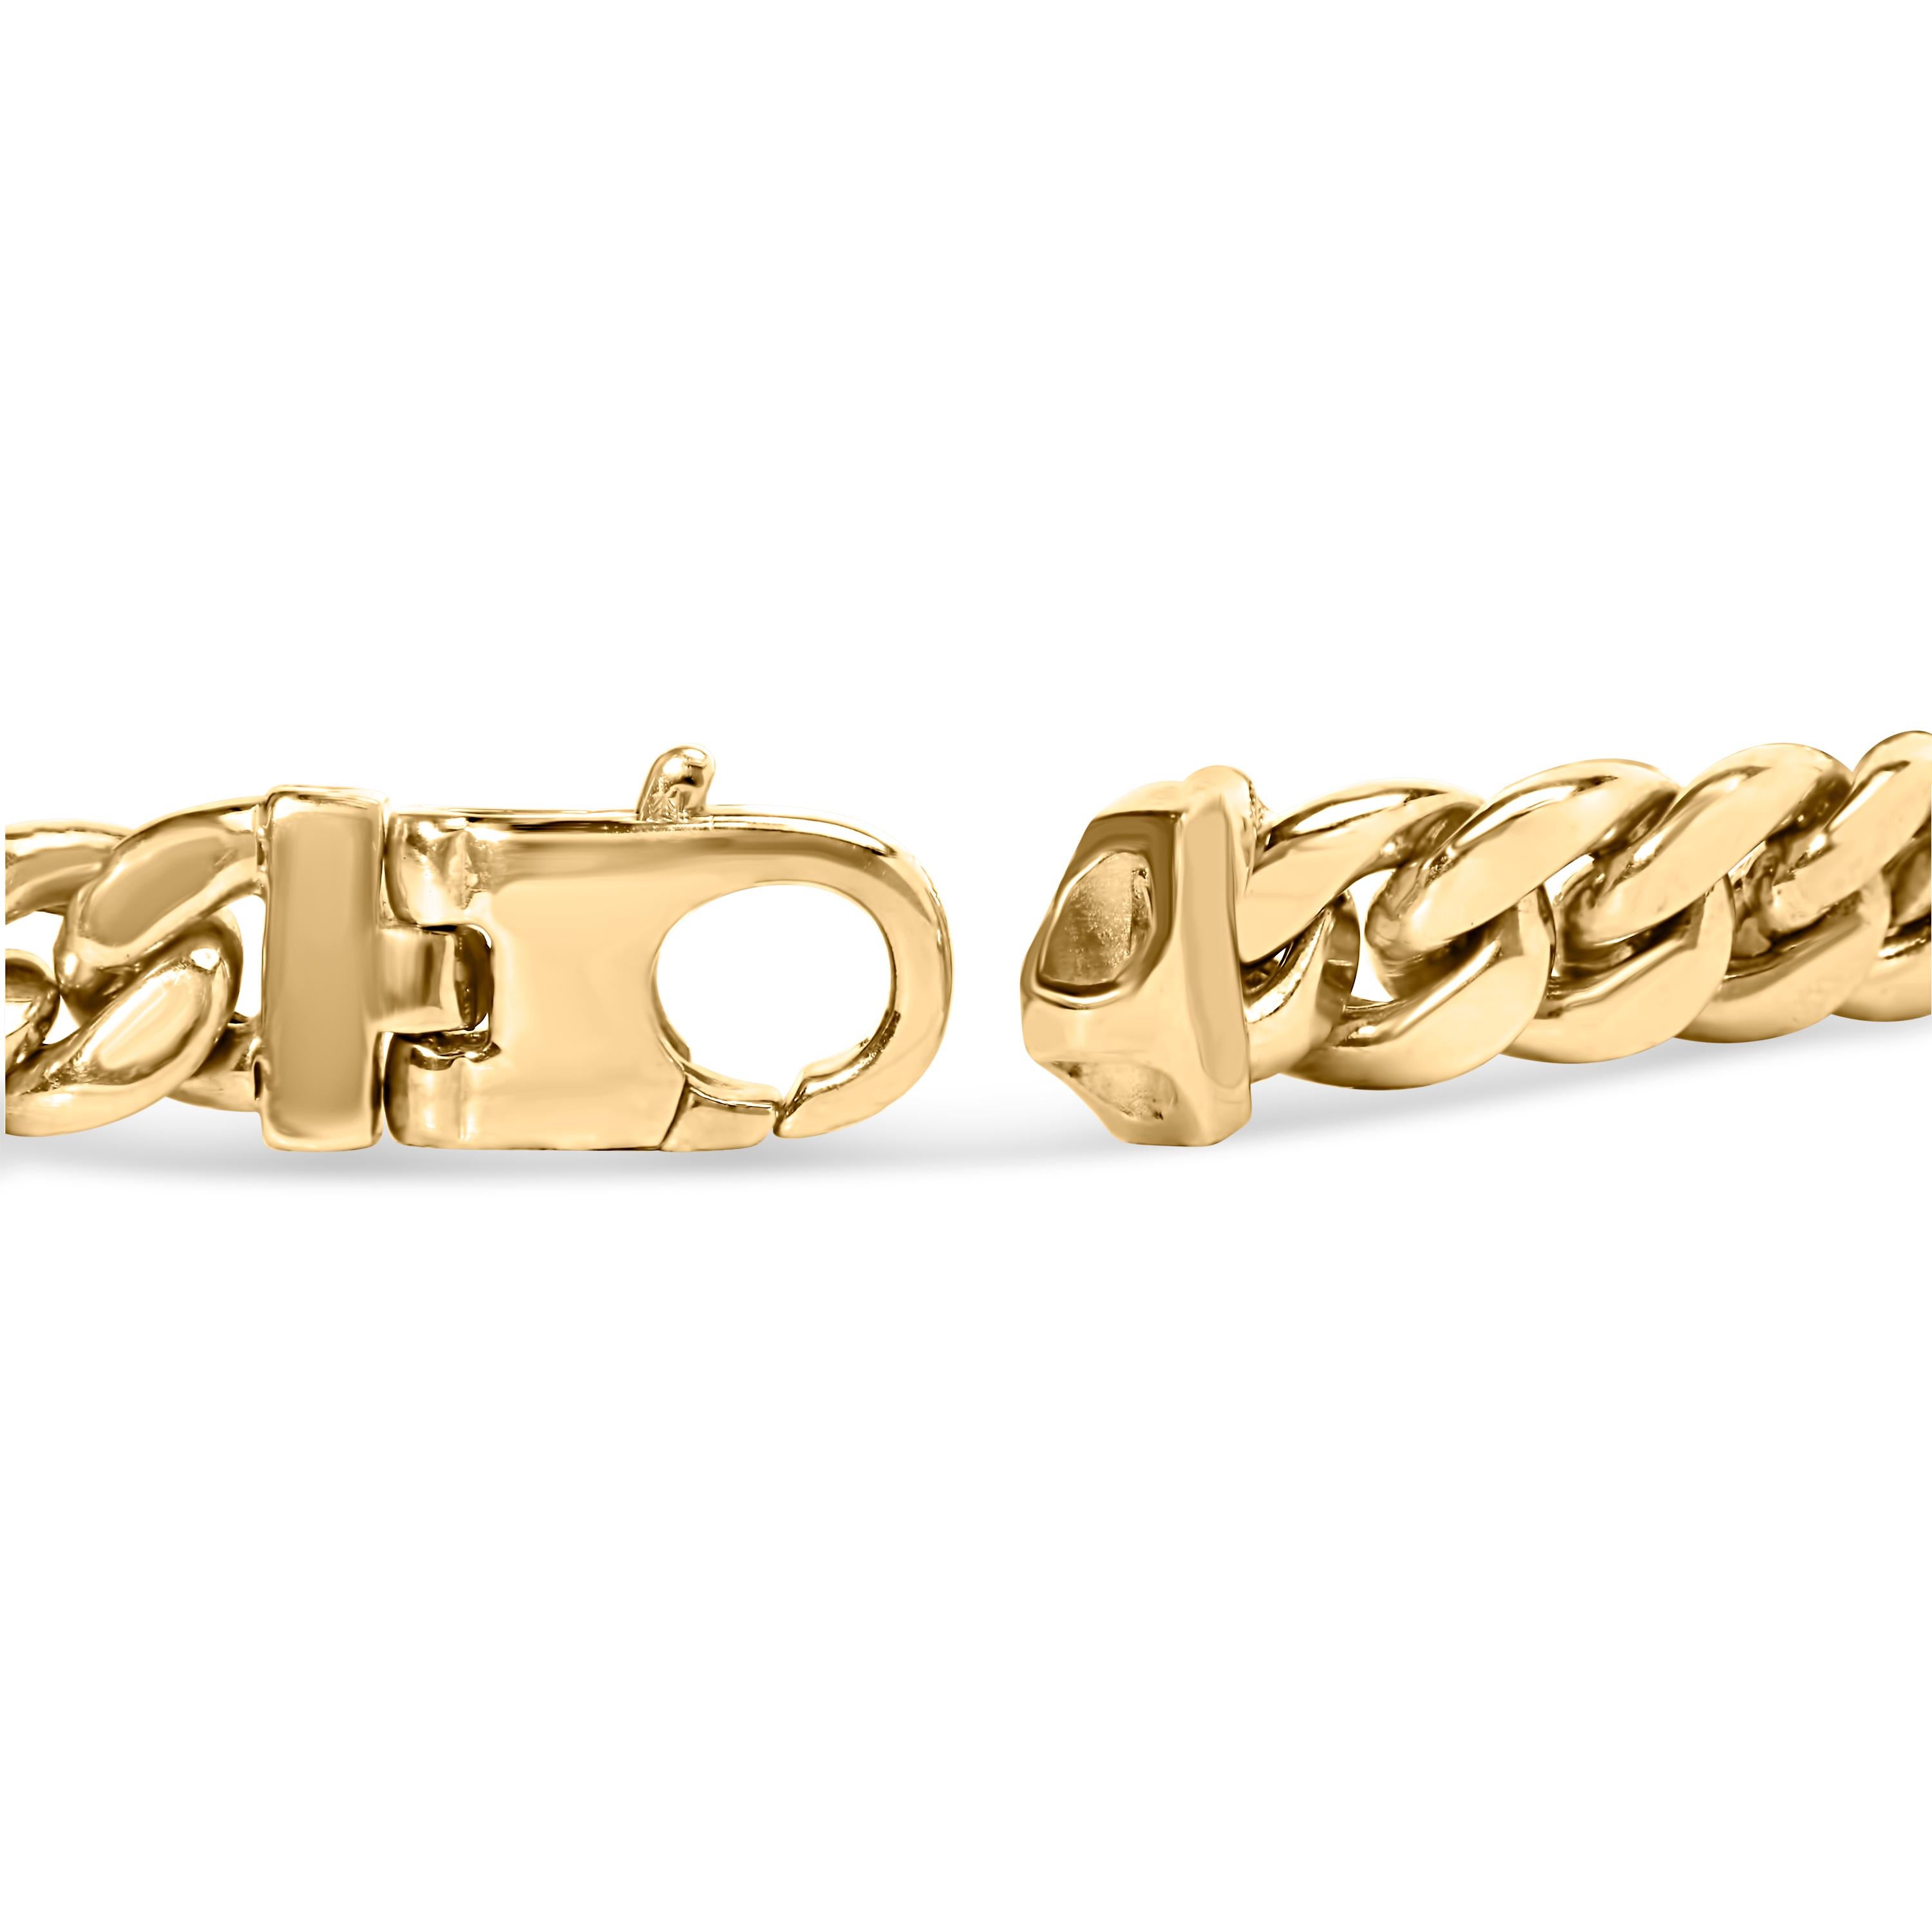 Erhöhen Sie Ihren Stil zu neuen Höhen mit unserem exquisiten 10K Gelbgold 1.00 Cttw Diamond Miami Cuban Link Herrenarmband, sorgfältig gefertigt für diejenigen, die nichts als das Beste verlangen. Dieses Armband verkörpert den Inbegriff von Luxus